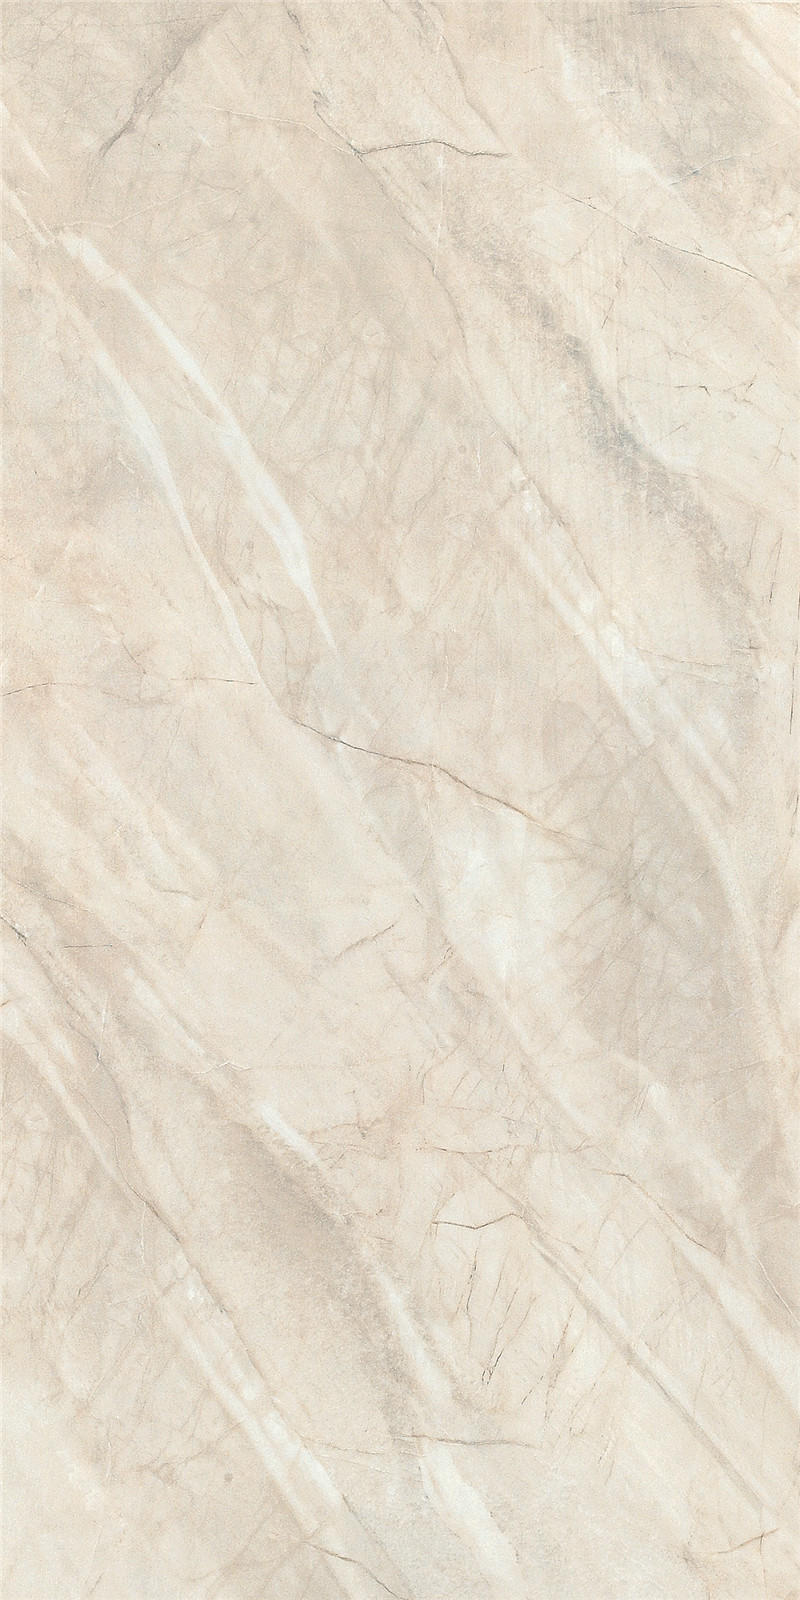 OEM diamond marble tile brown white cheap tiles online